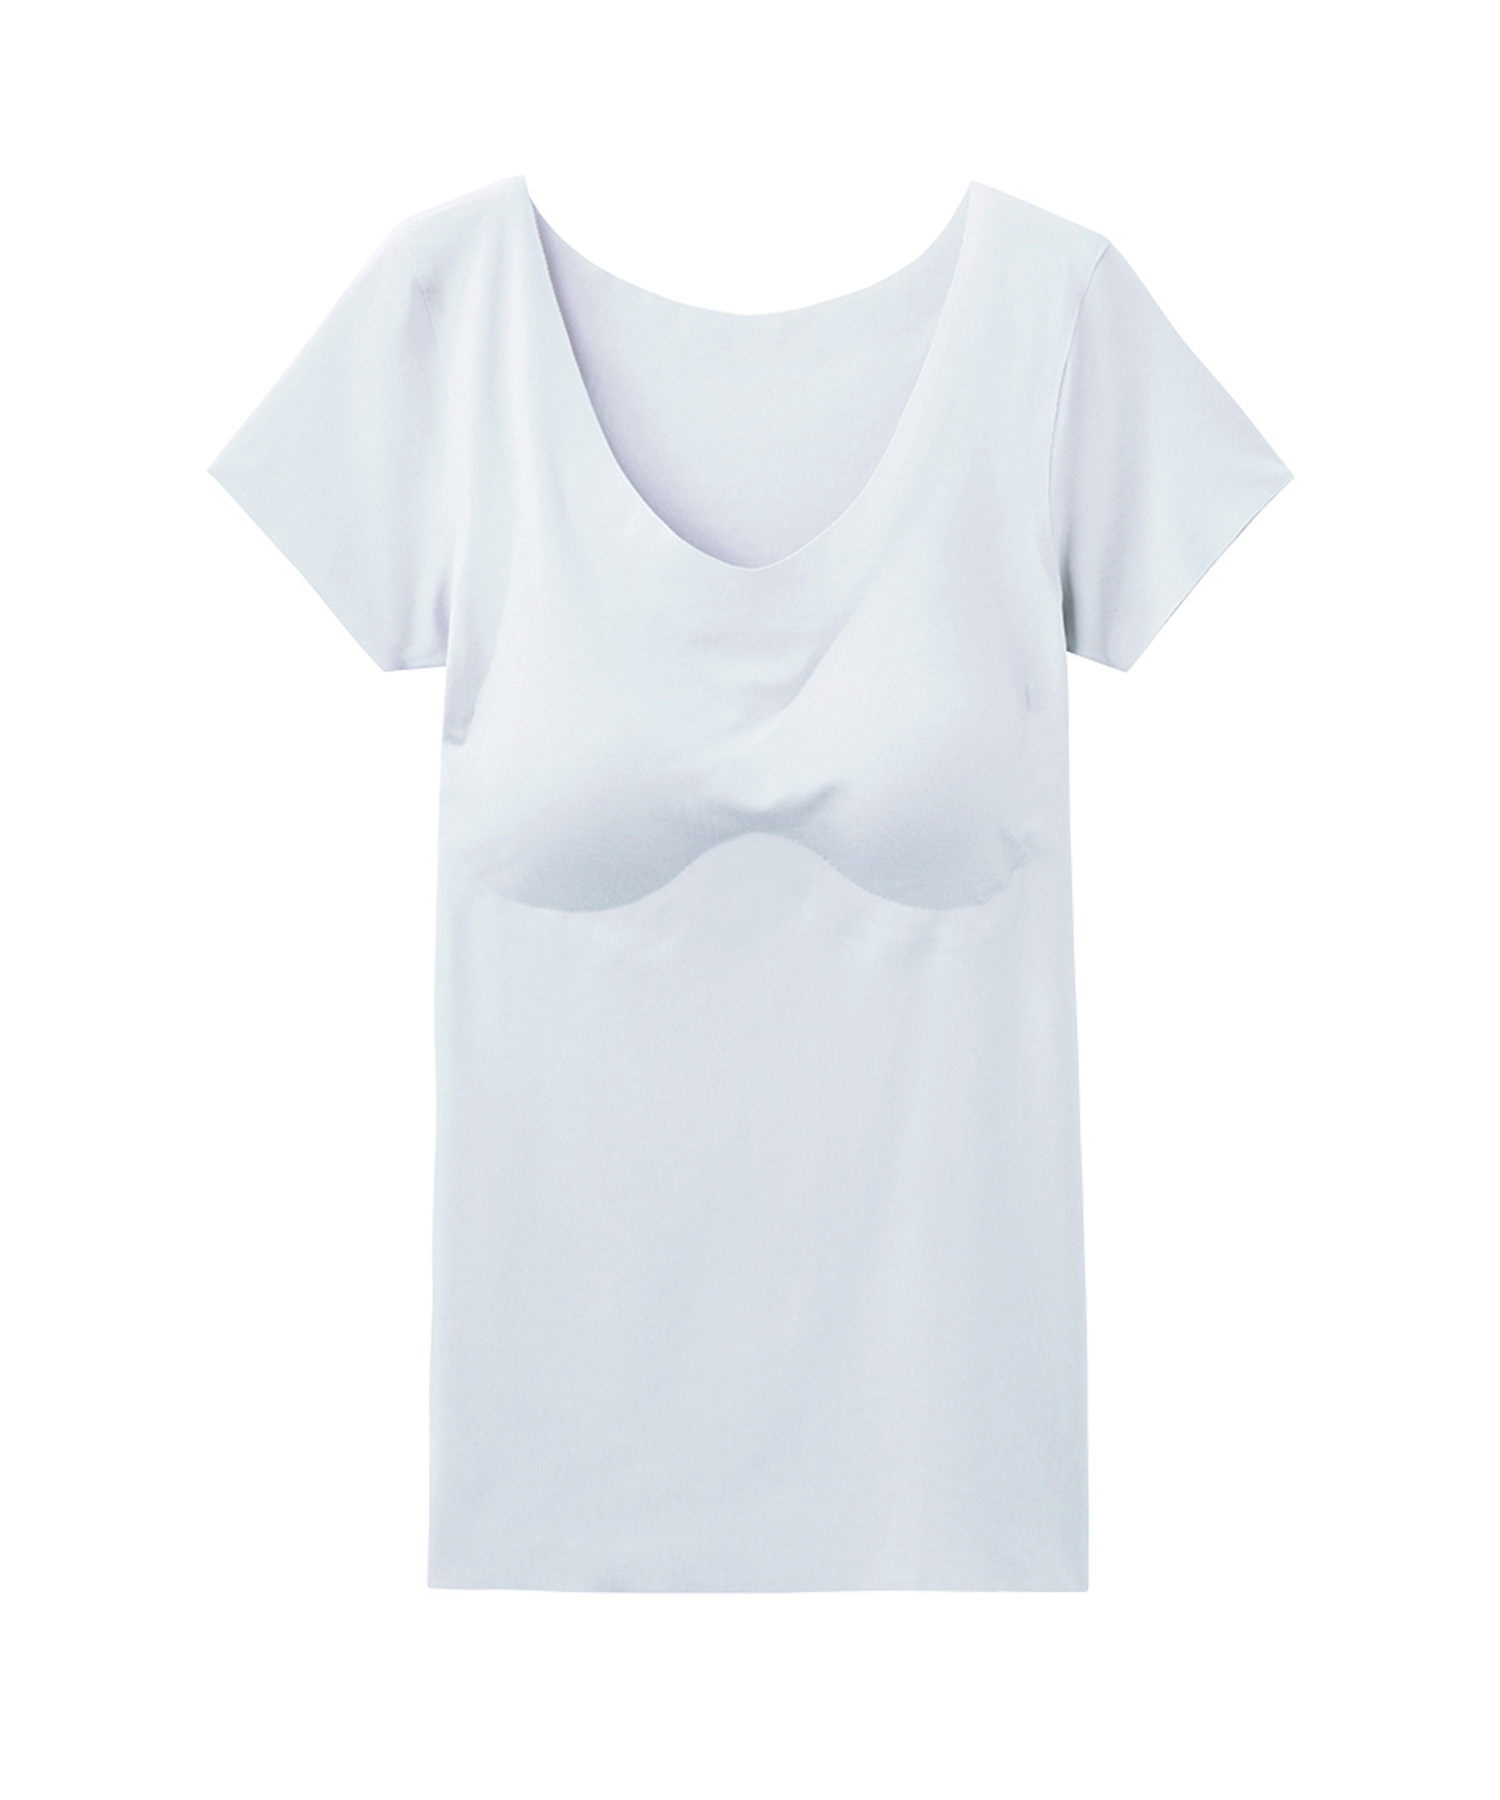 グンゼ GUNZE Tシャツレディース レディース 完全無縫製COOL 半袖 カップ付きインナー 接...